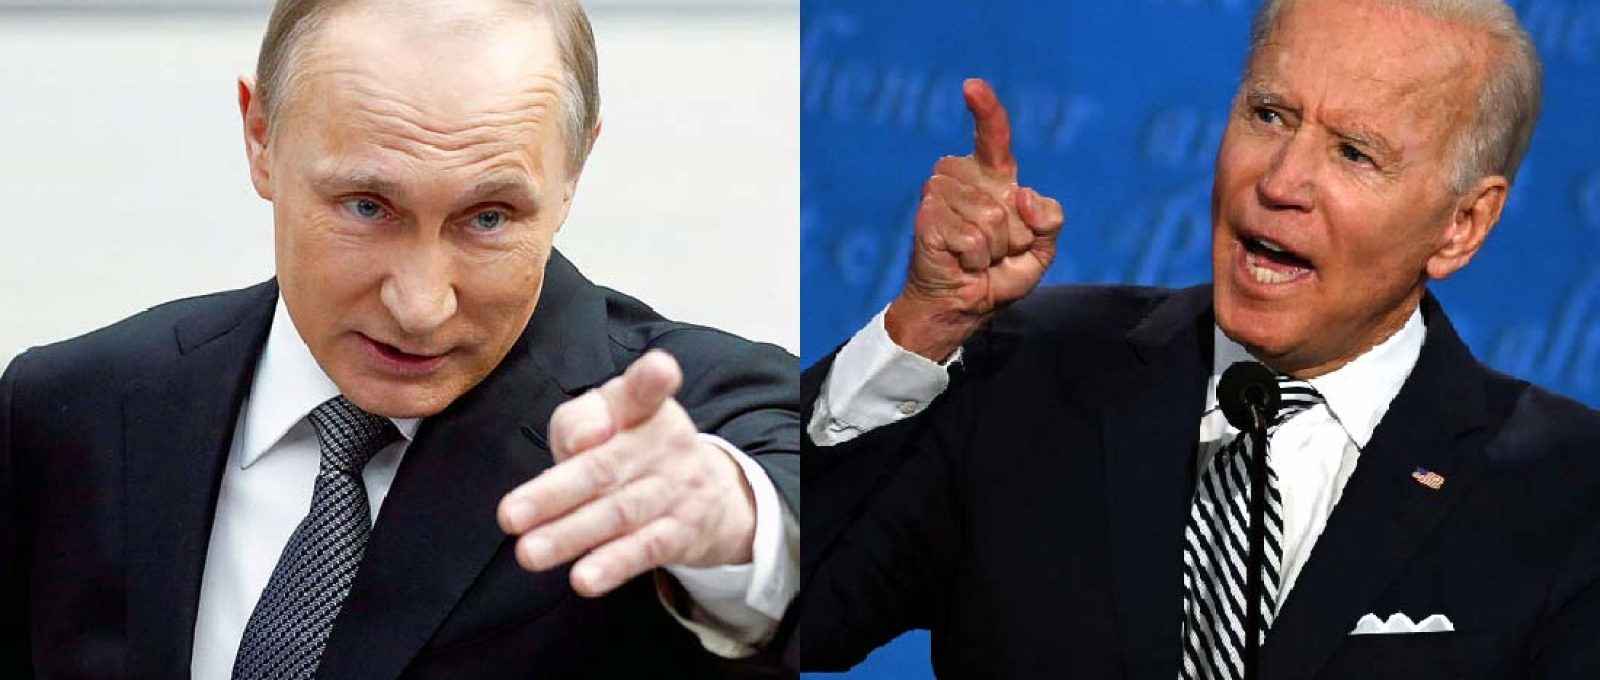 Os presidentes Vladimir Putin, da Rússia (esq.), e Joe Biden, dos EUA (dir.).